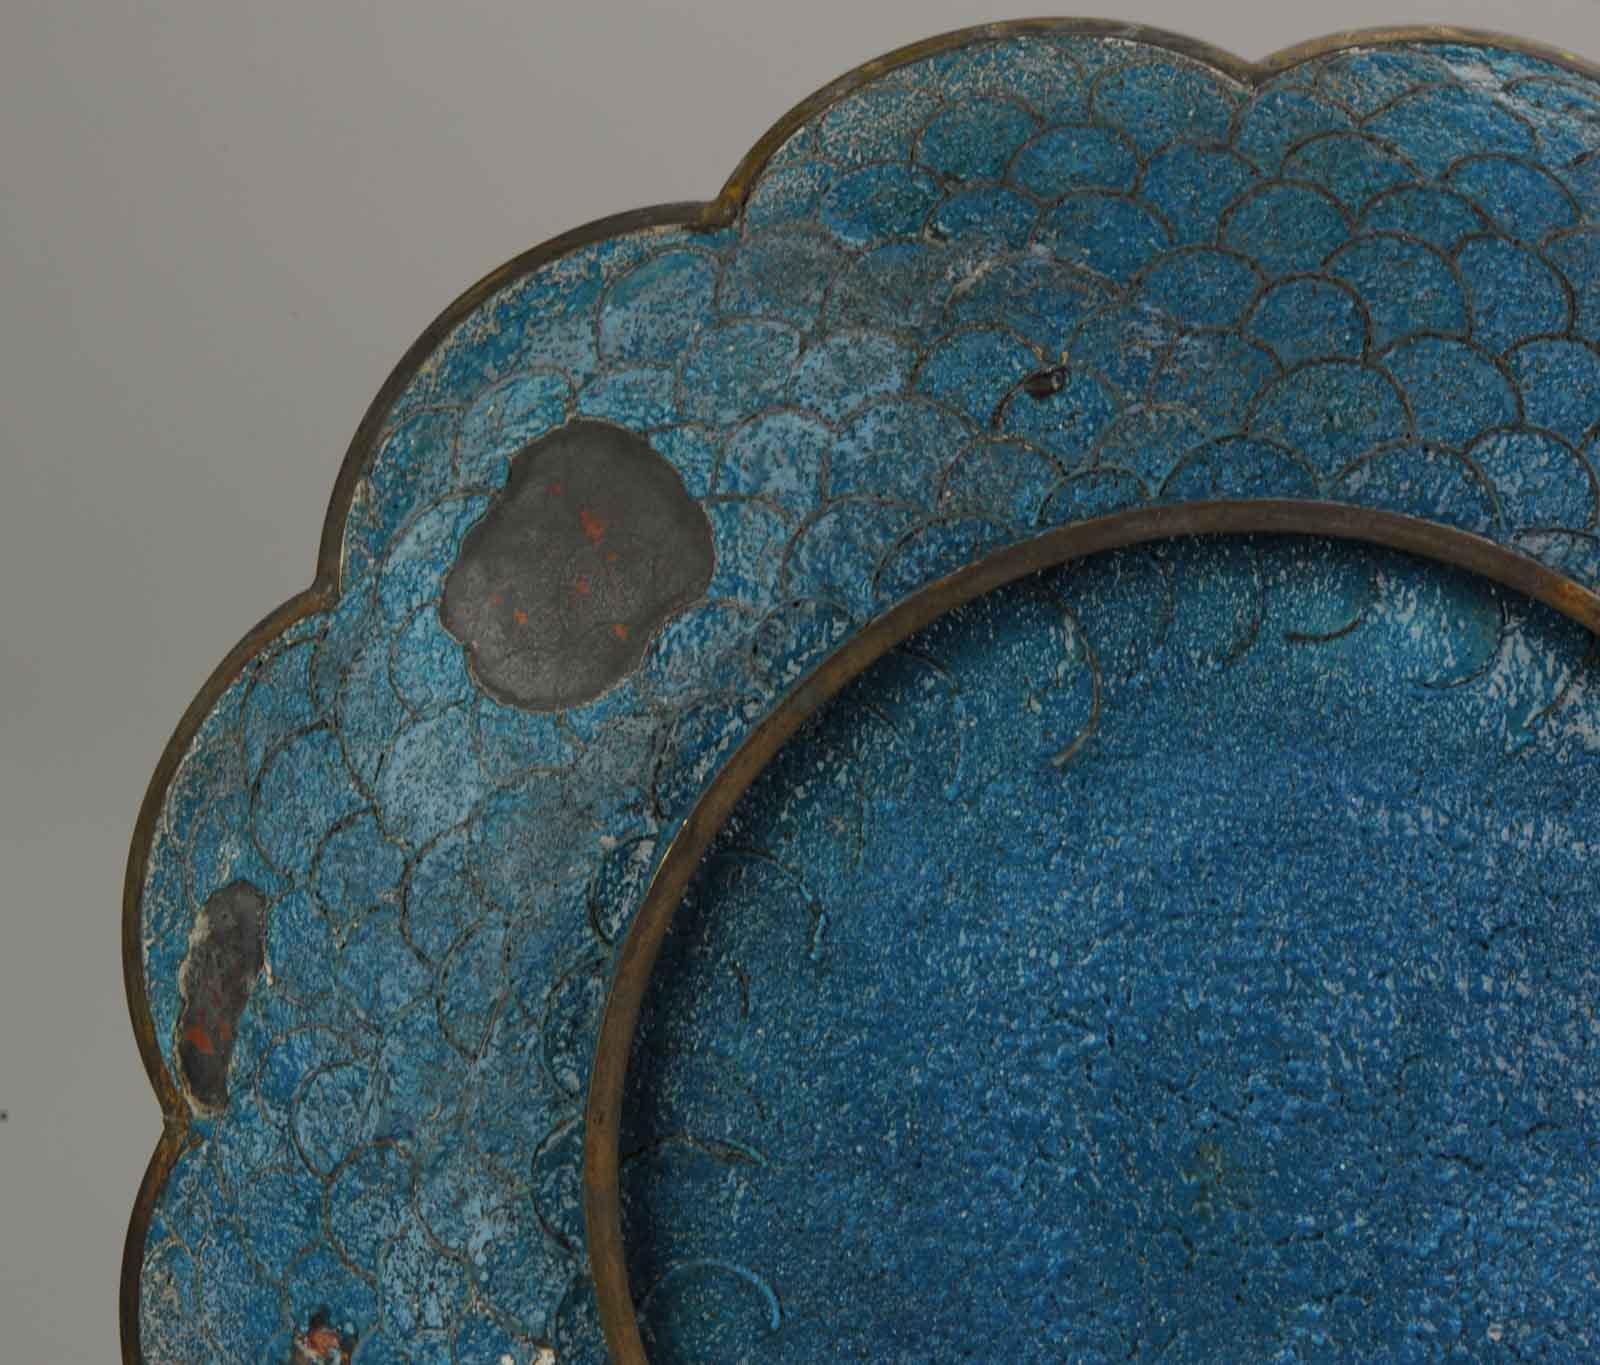 Top and Large Antique Bronze/Copper Cloisonné Dish Plate Japan 19th Century Fan For Sale 11